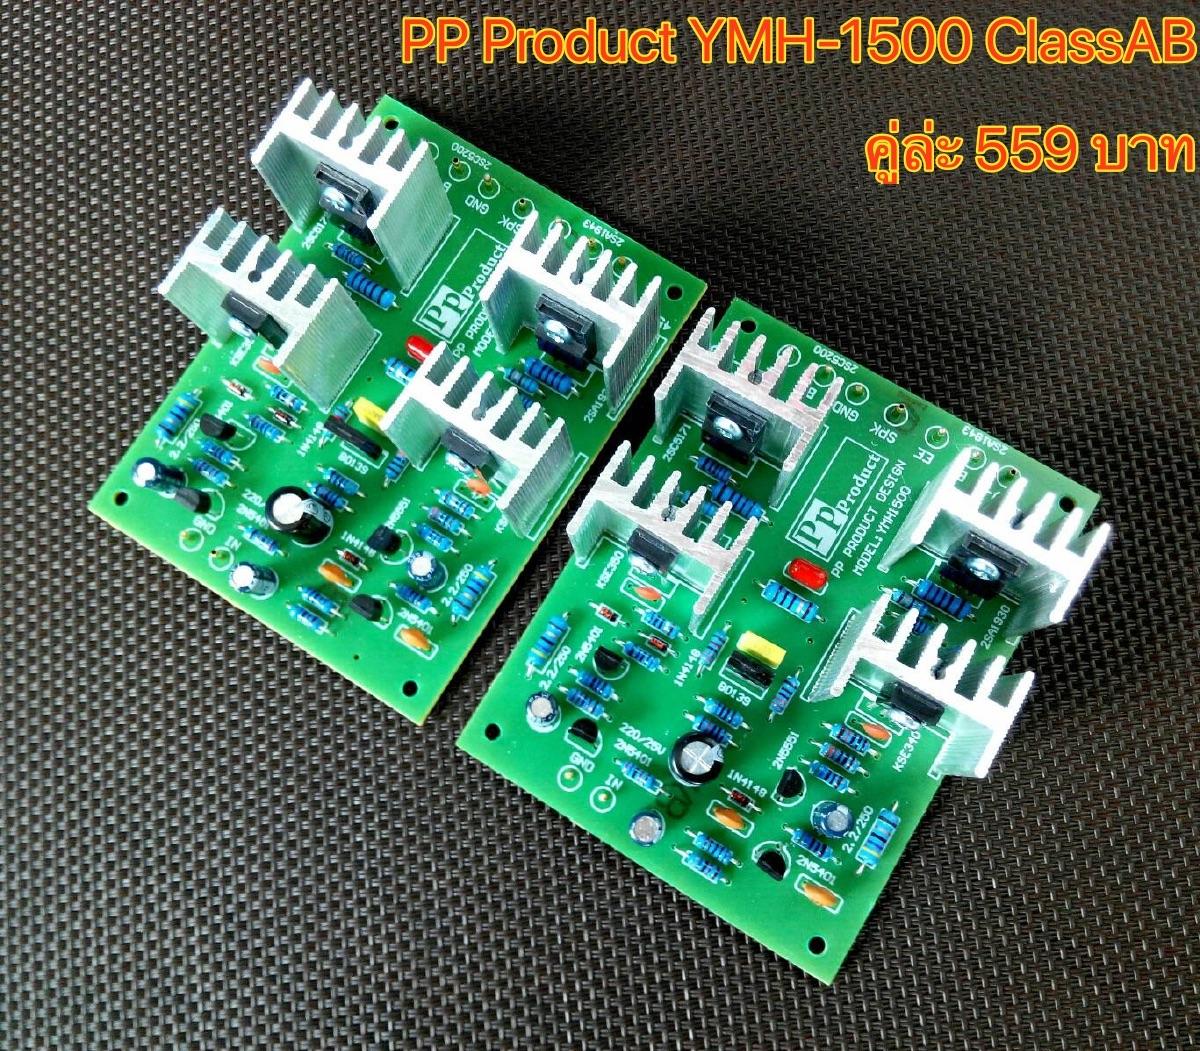 PP Product YMH-1500 Amplifier Board บอร์ดไดร์ สไตล์ยามาฮ่า คู่ล่ะ 599